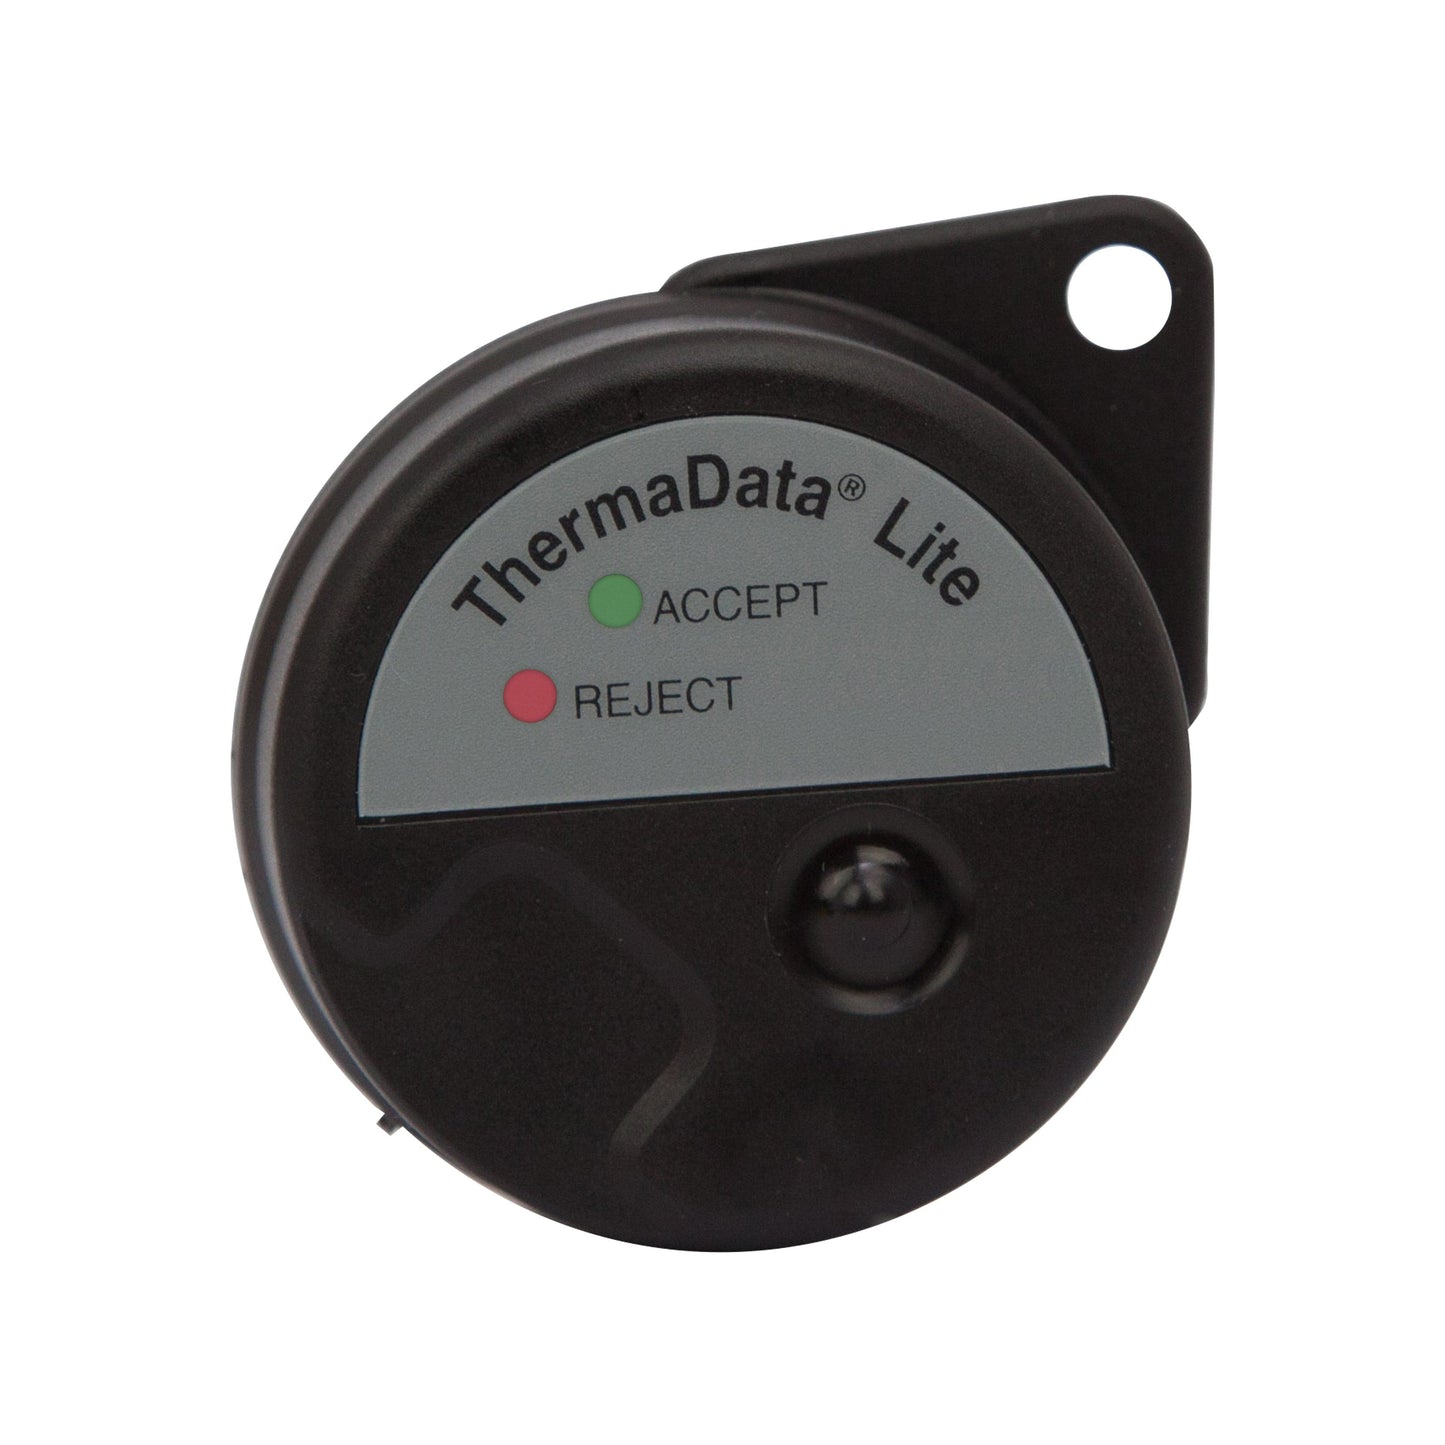 Un Enregistreur ThermaData® Lite noir de Thermomètre.fr avec un voyant vert "ACCEPT" et un voyant rouge "REJECT".